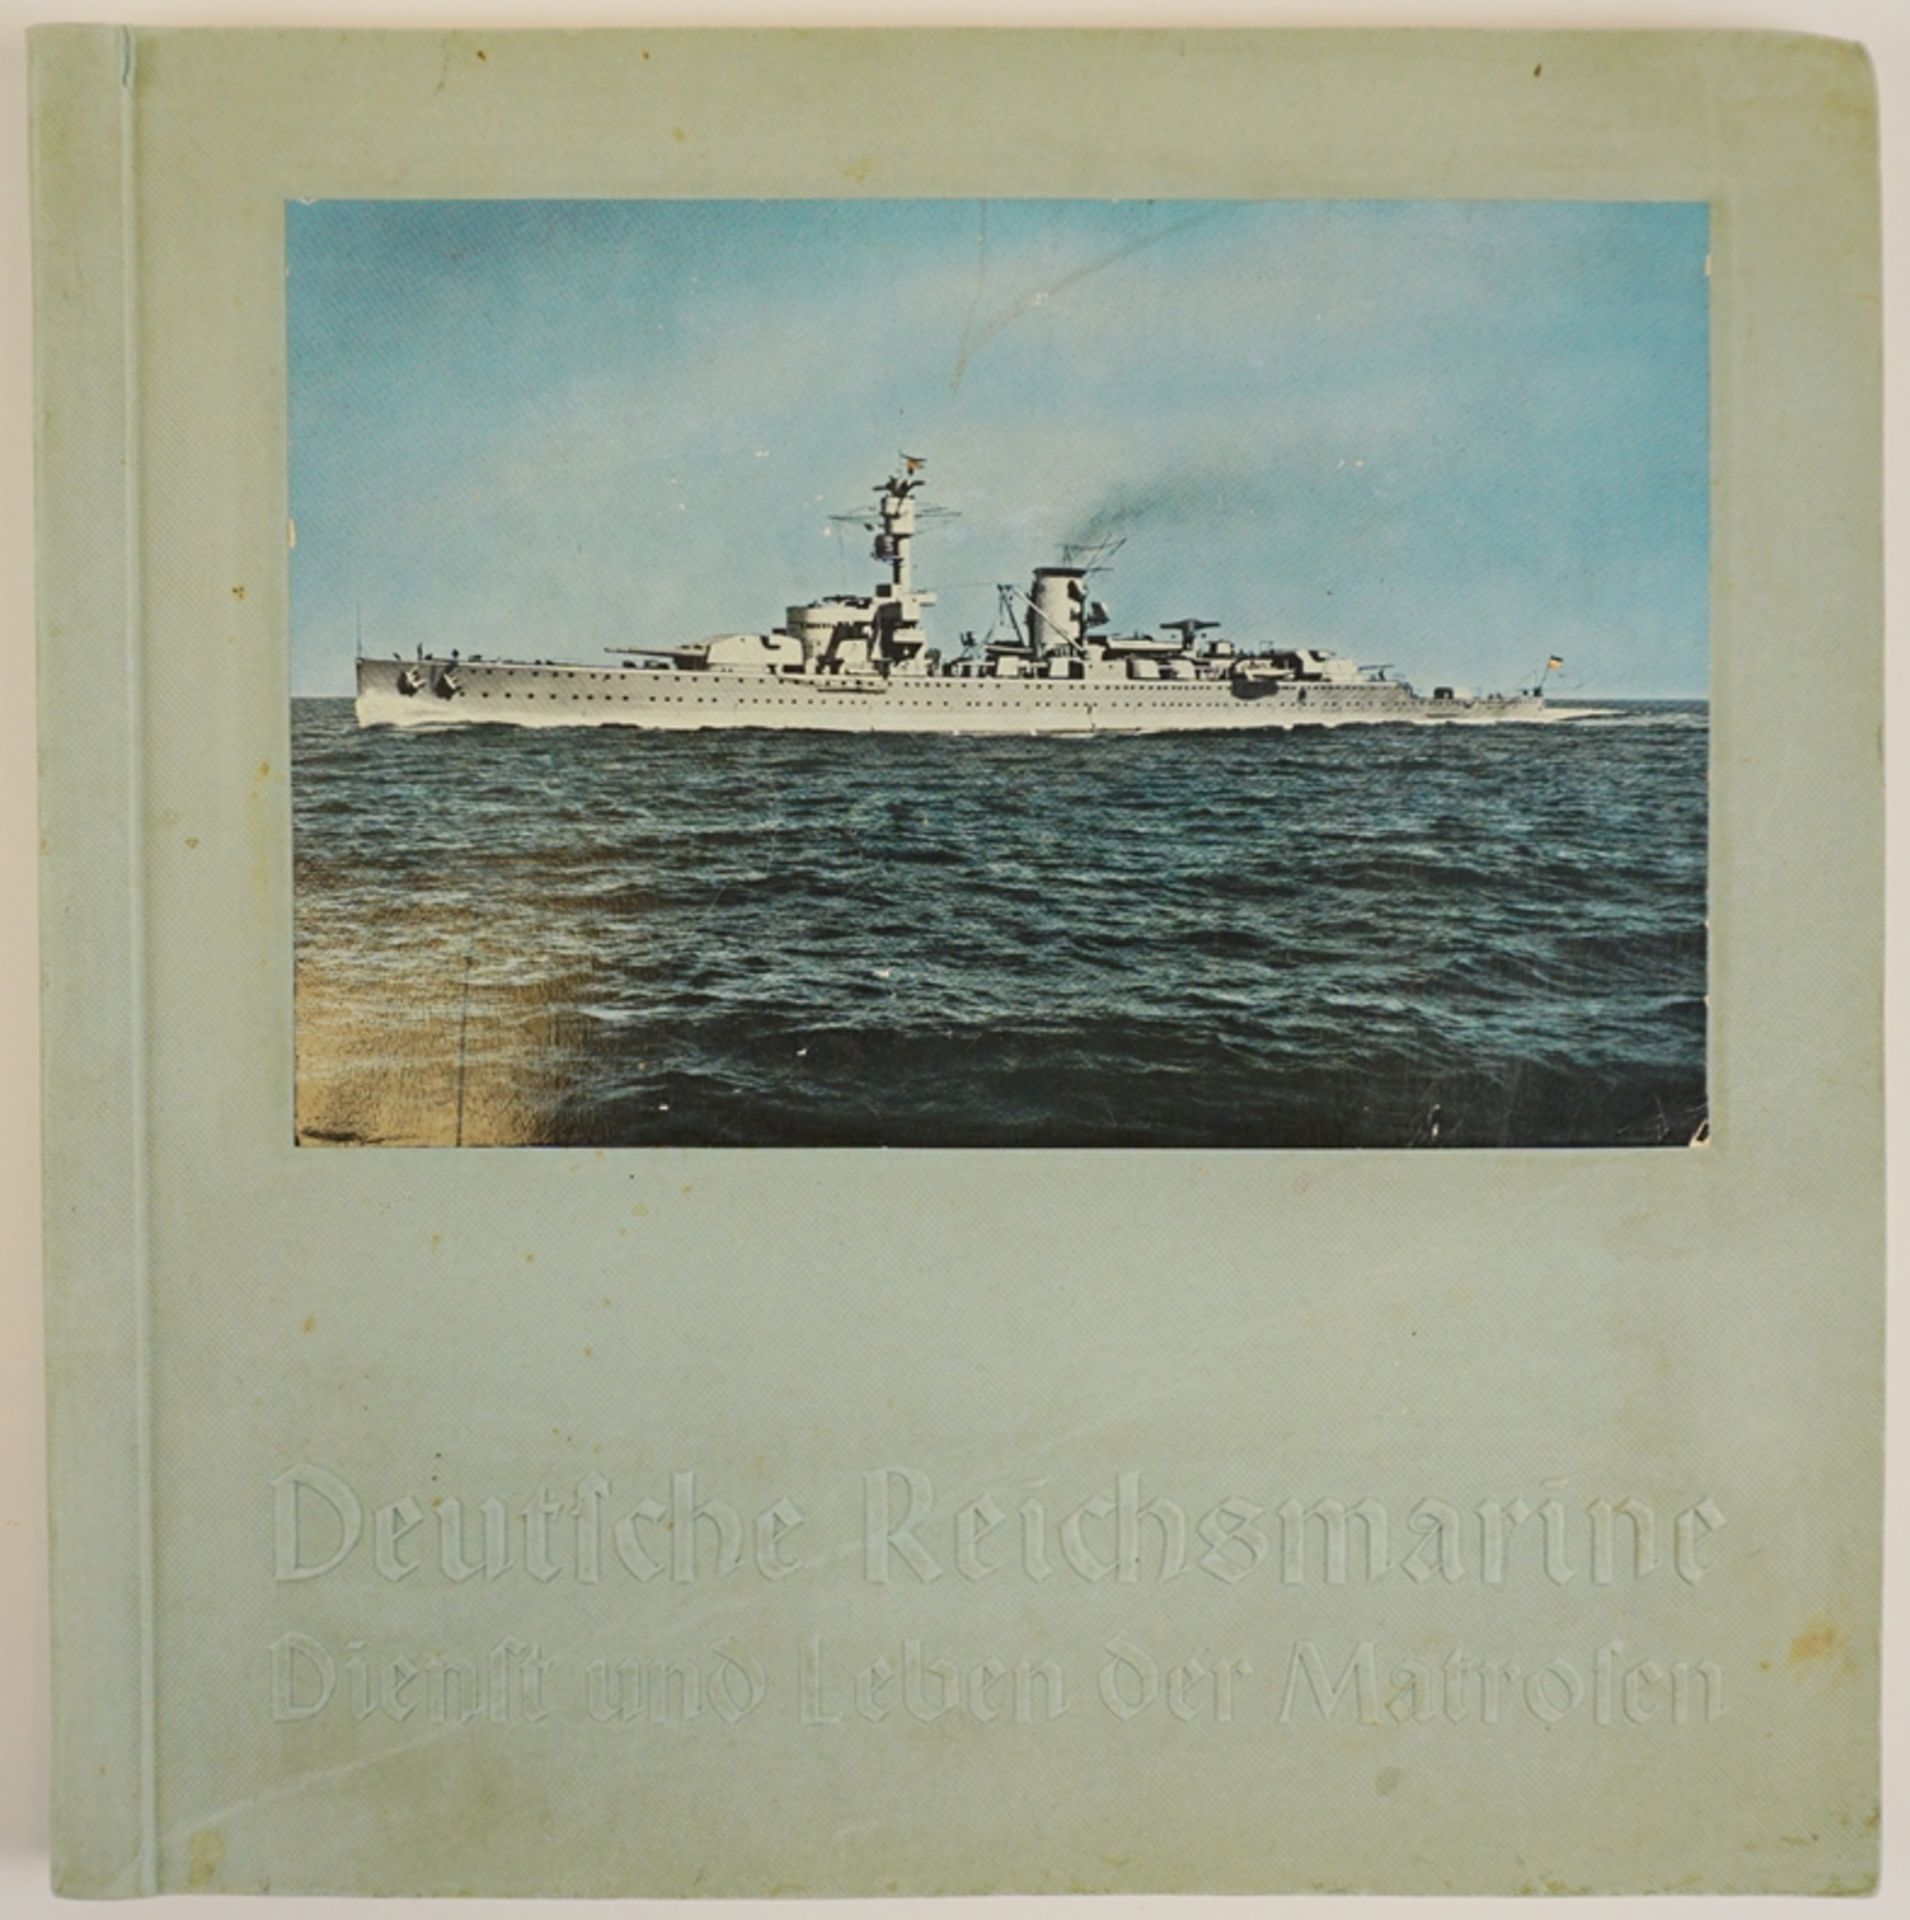 Deutscher Reichsmarine-Dienst und Leben der Matrosen, Sammelbilderalbum, 1934